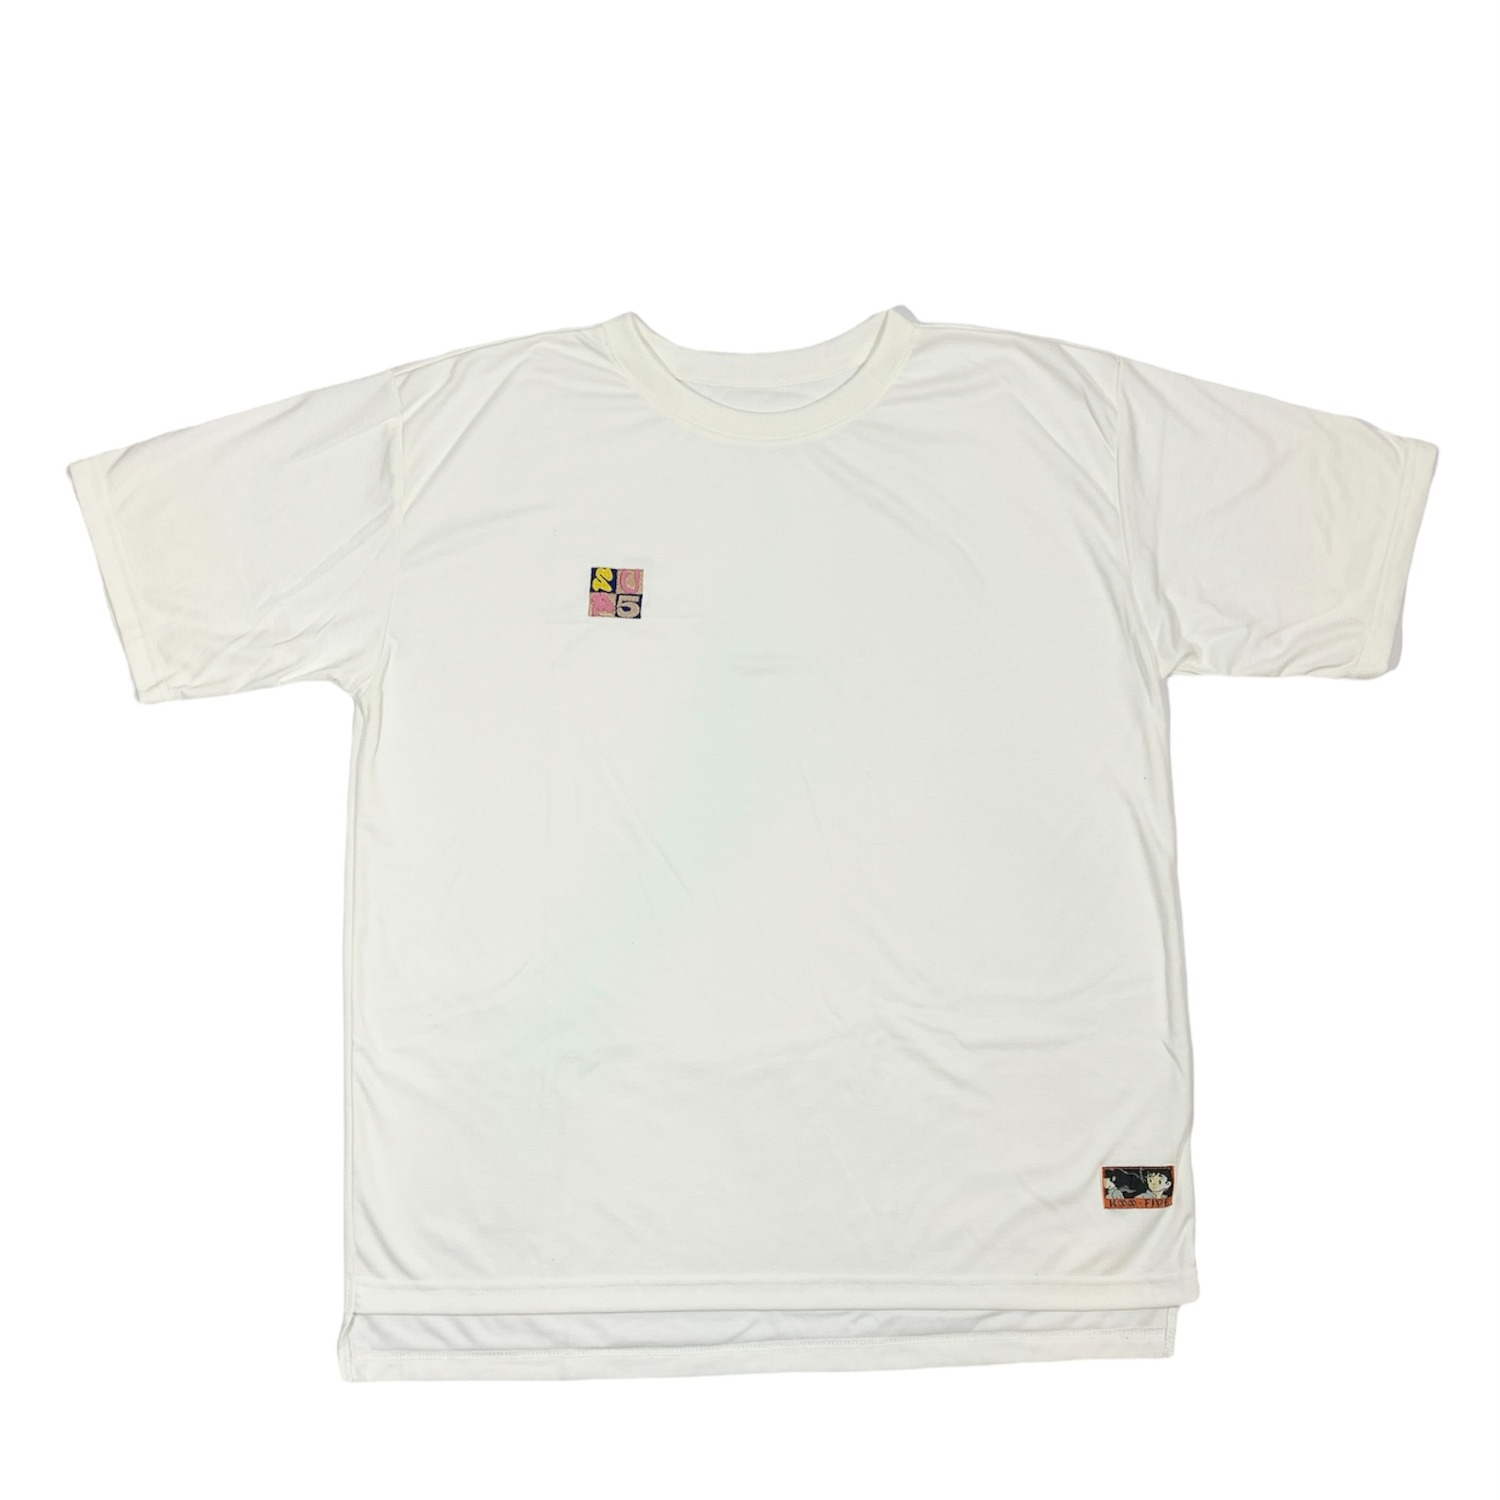 Super.5 JOMO T-Shirt (White)